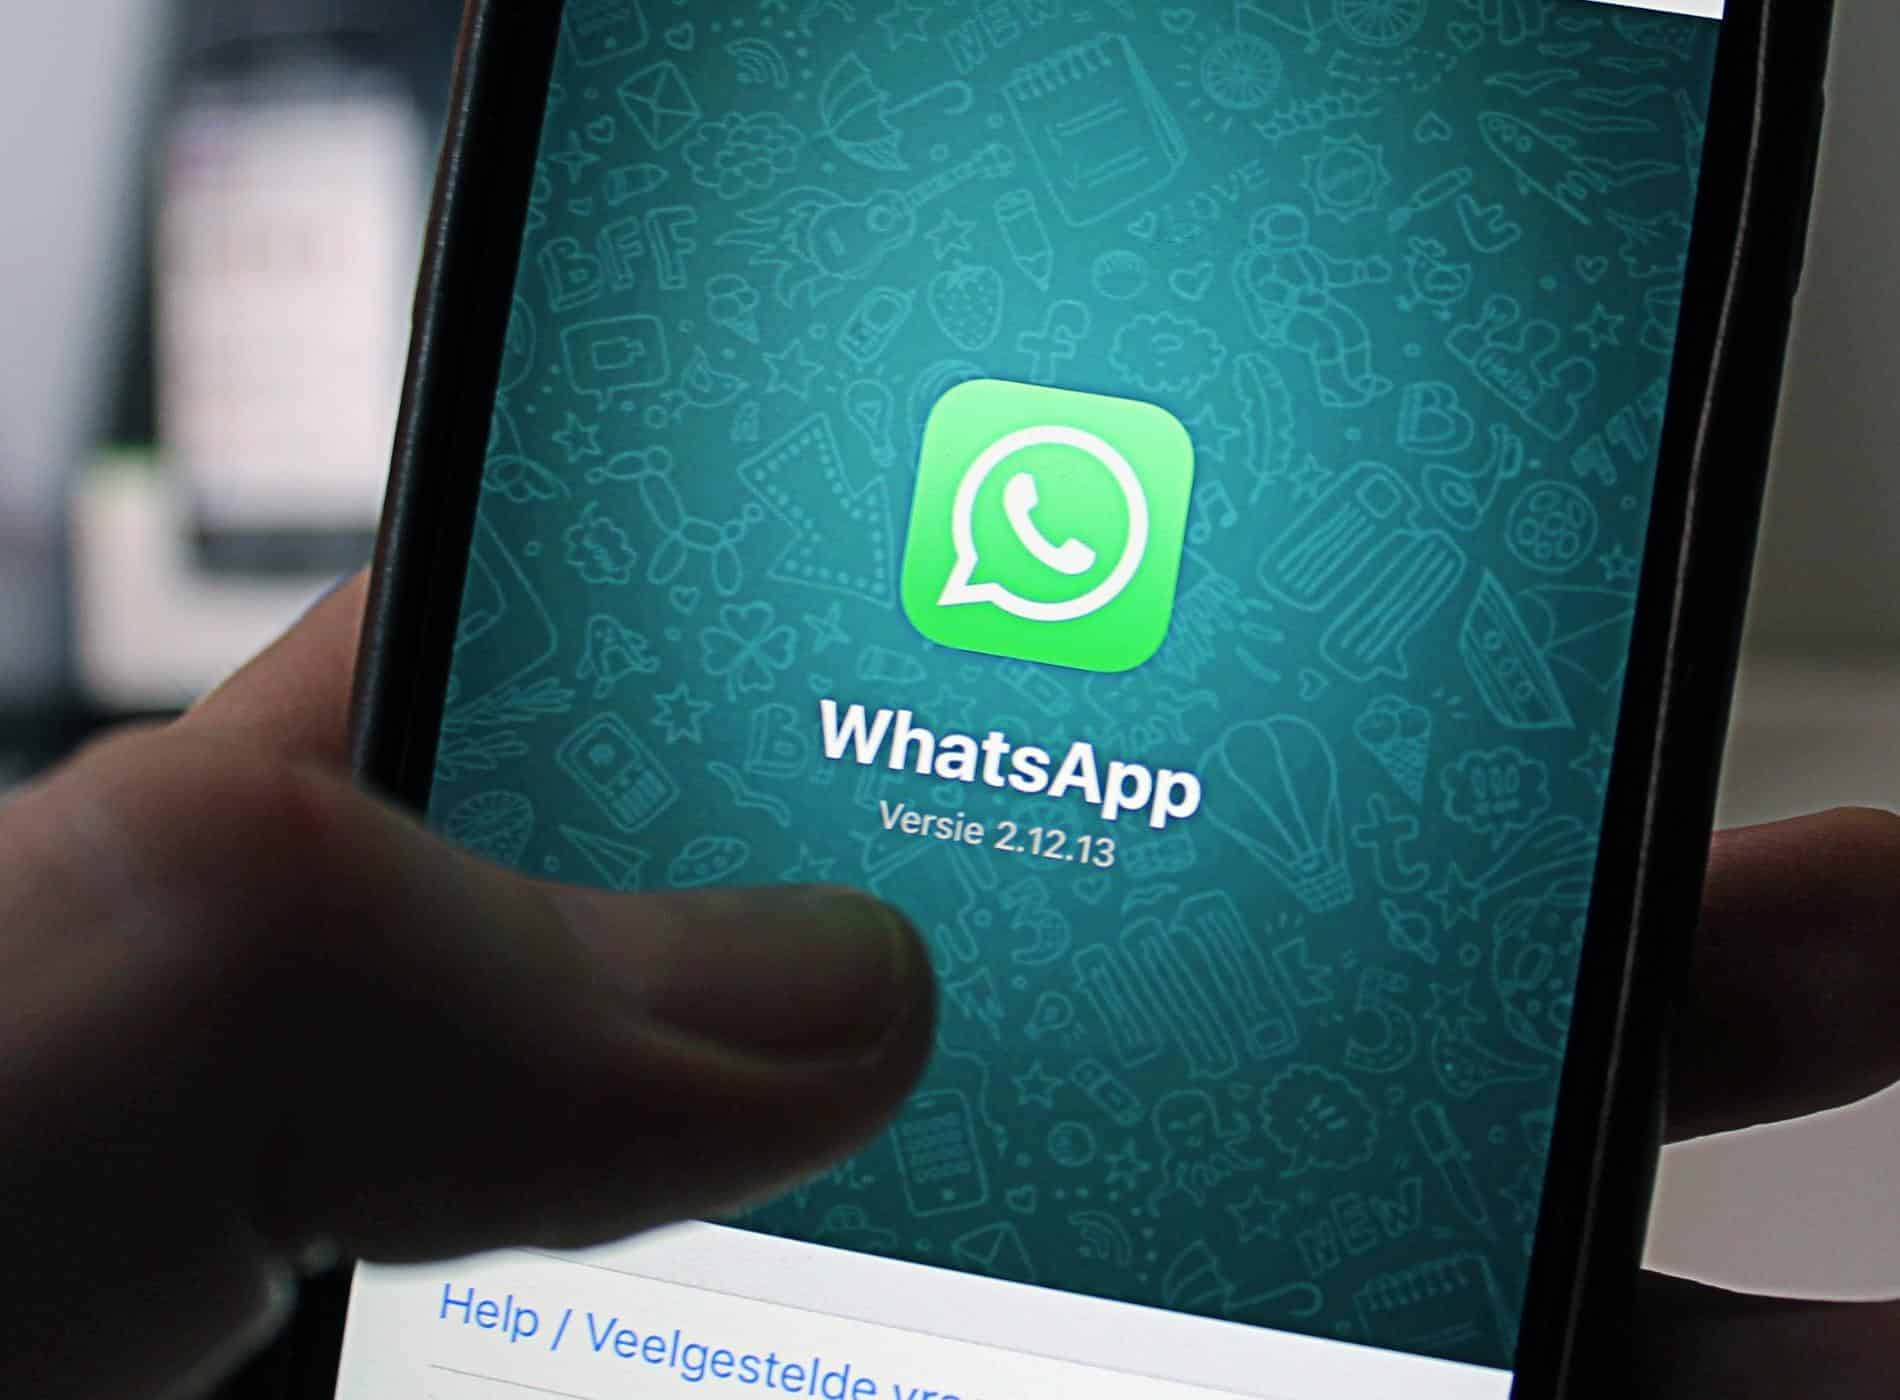 Ocultar ultima conexion WhatsApp y ver la de los demas